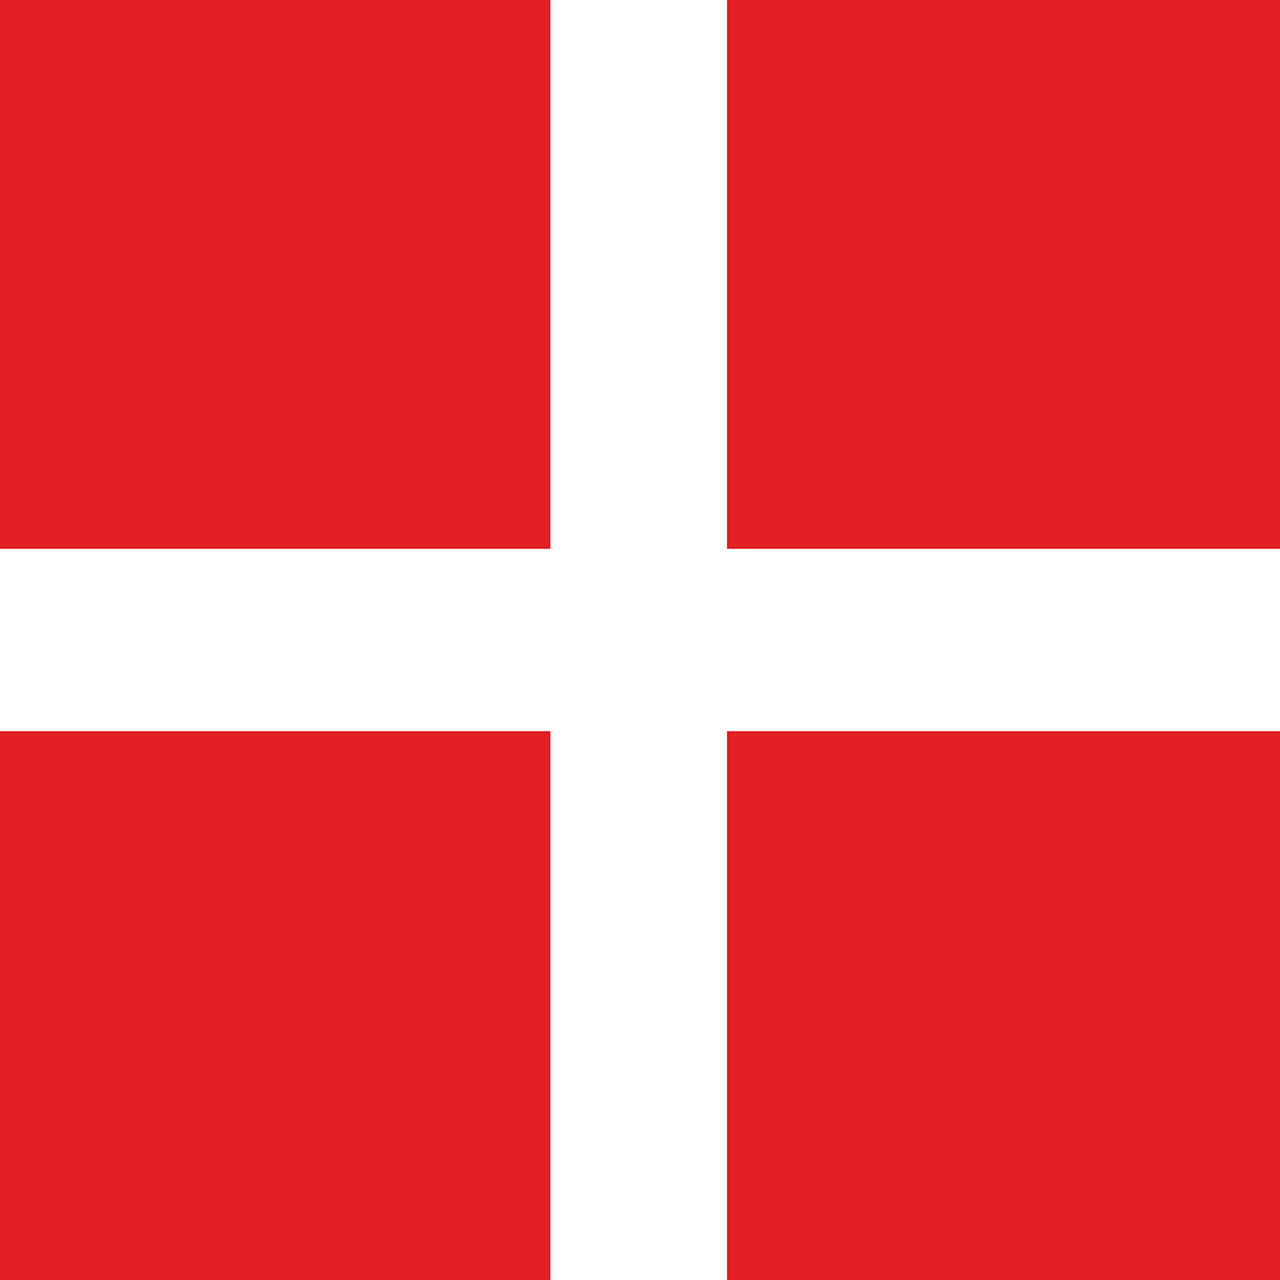 danmark danish flag flag denmark free photo